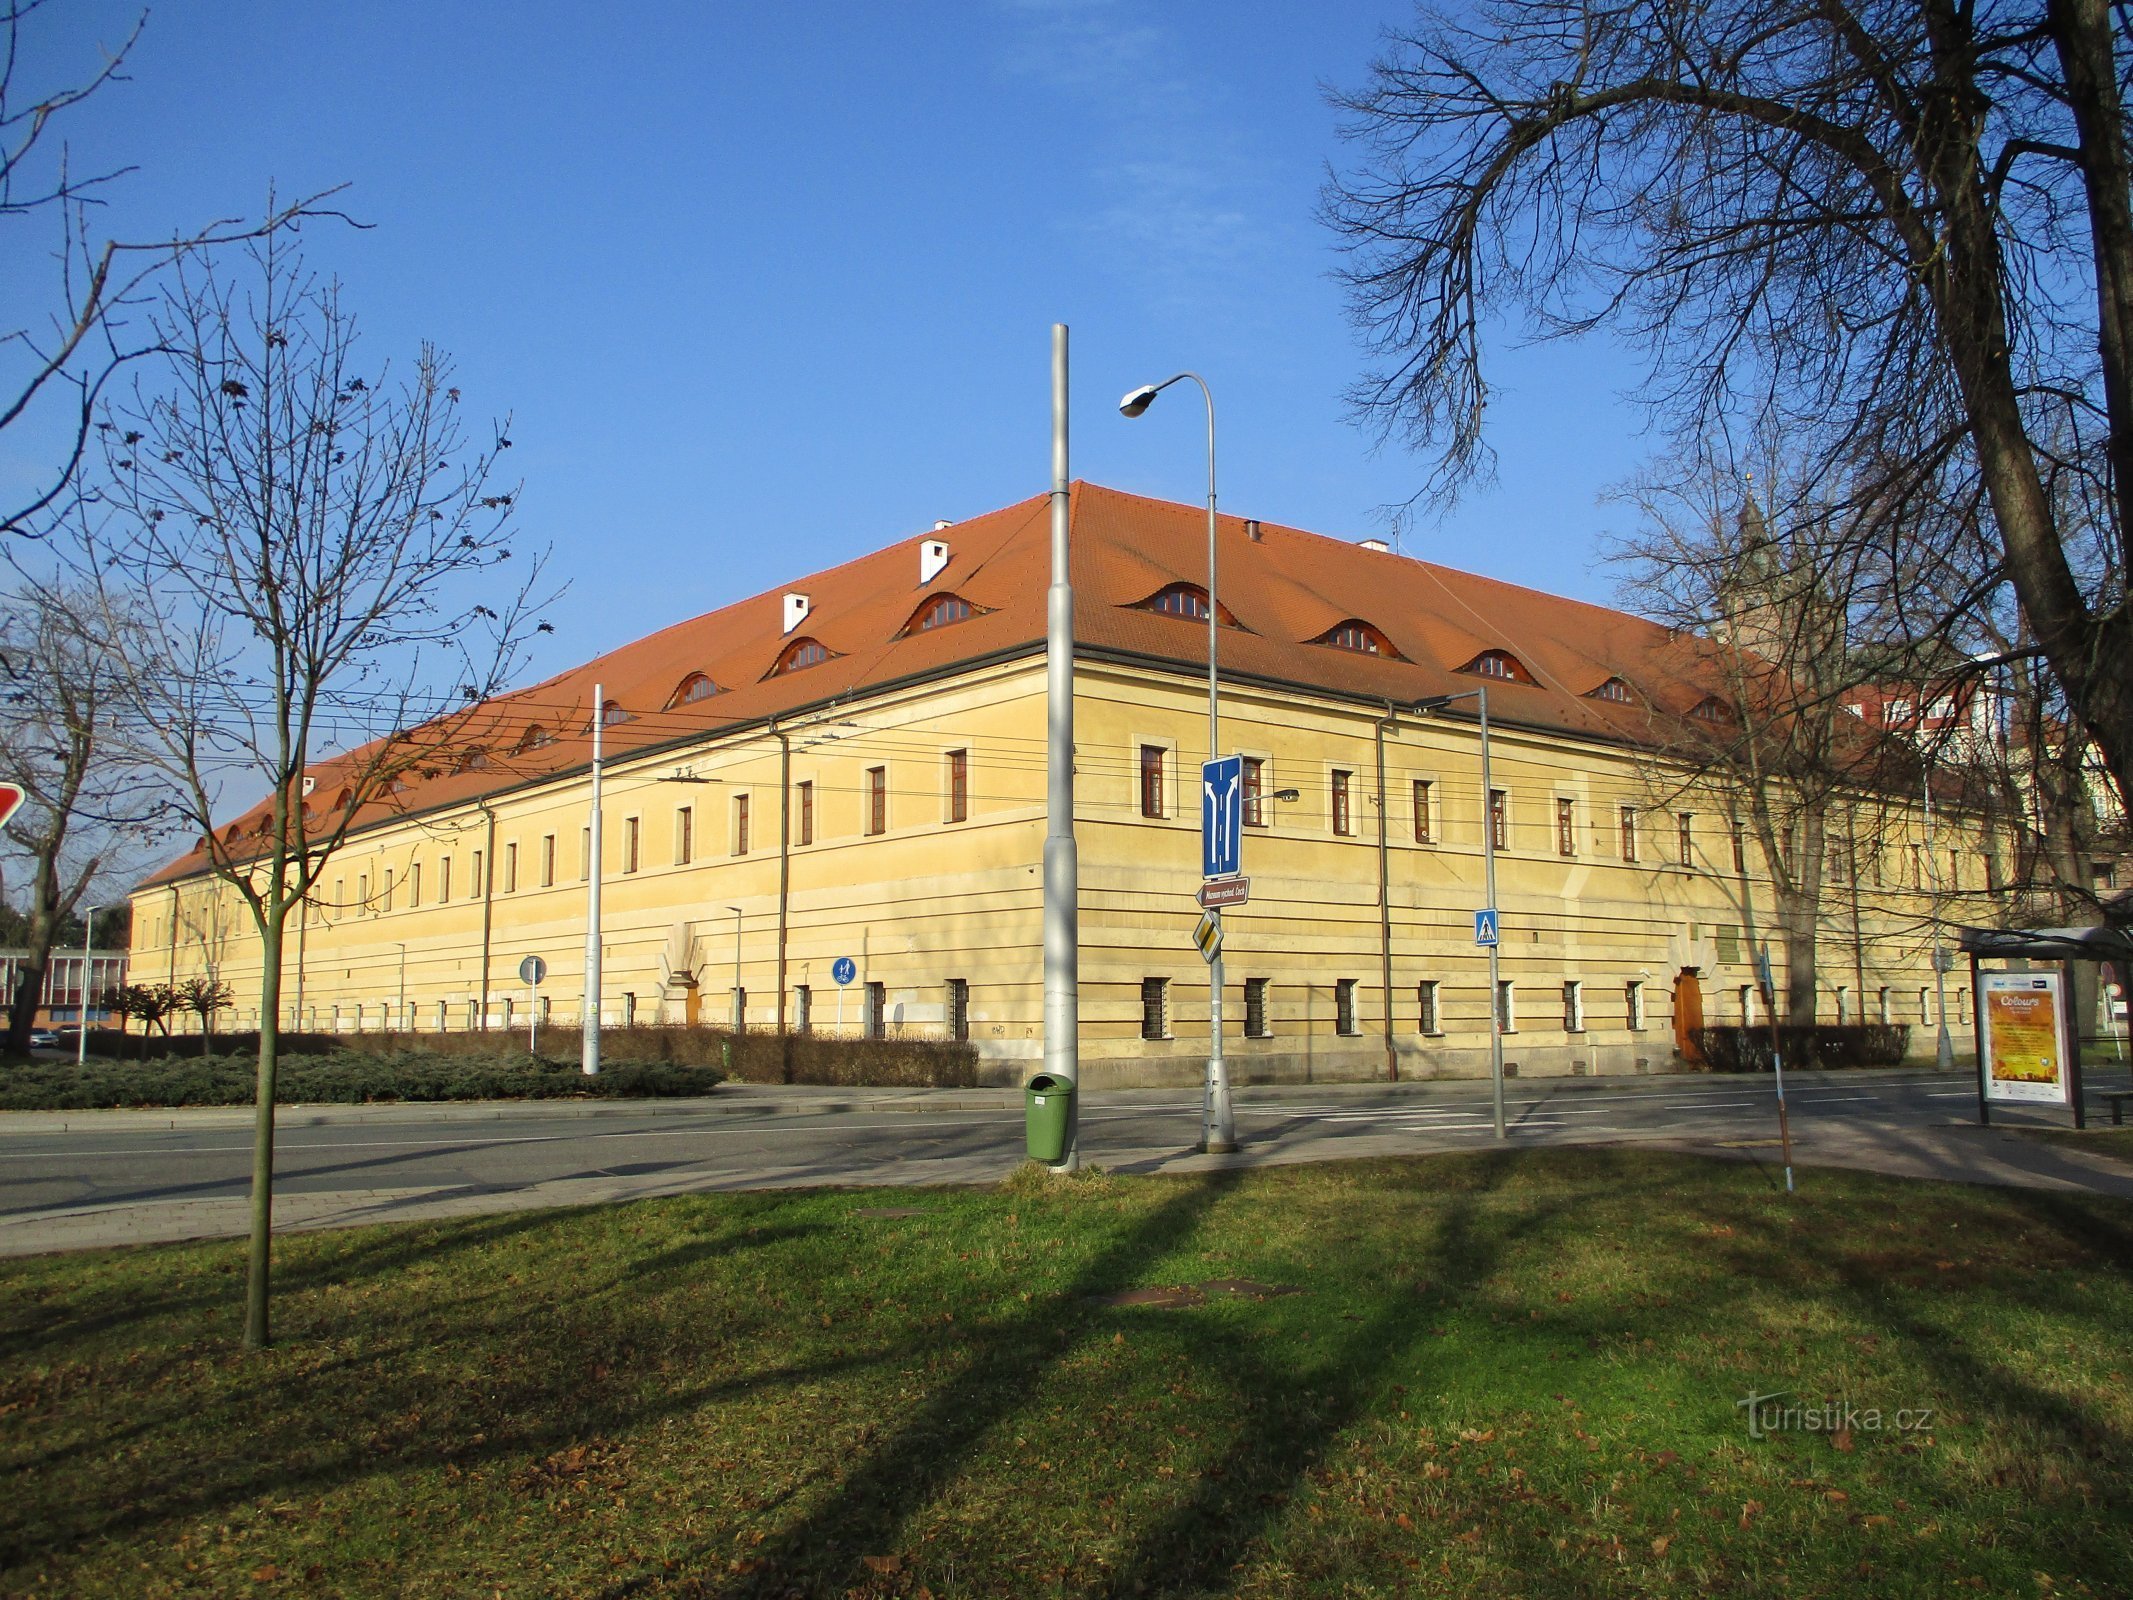 Nekdanja konjeniška vojašnica (Hradec Králové, 9.2.2020. februar XNUMX)